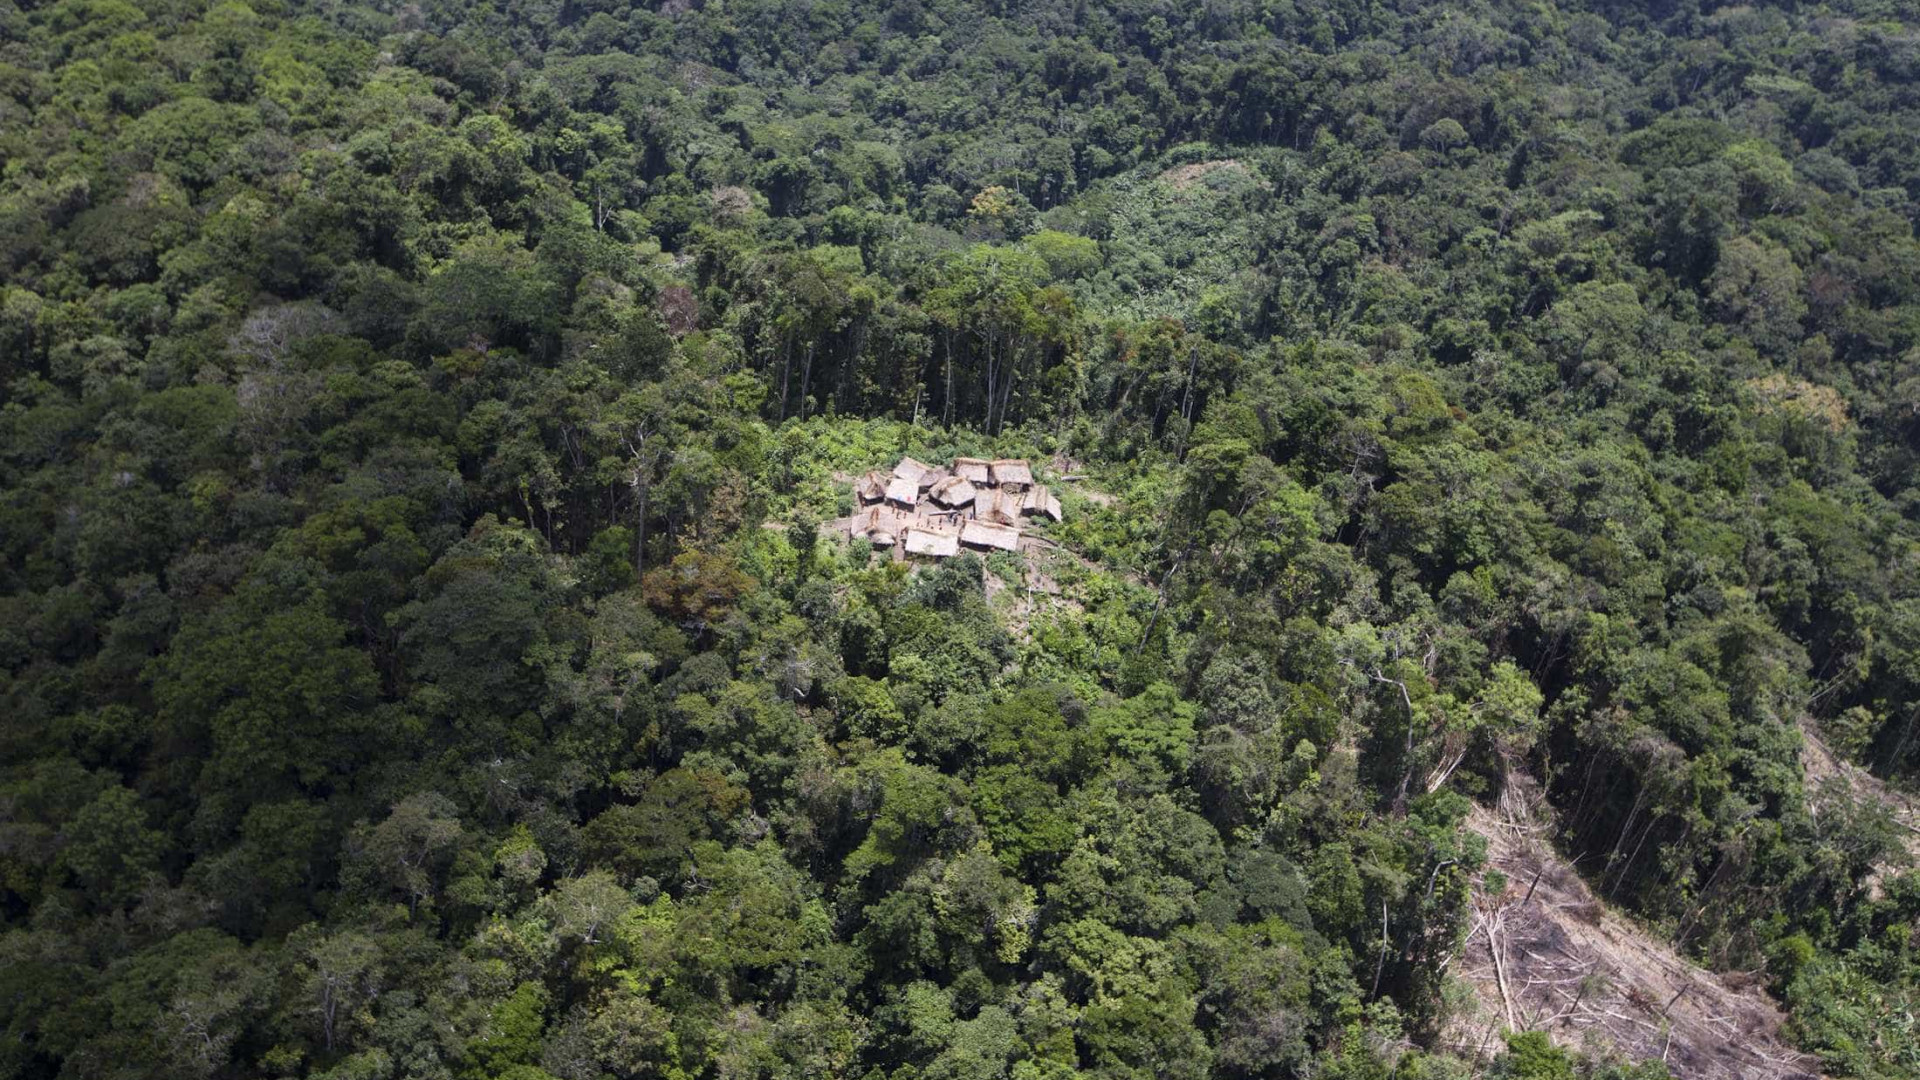 Desmatamento na Amazônia sobe 35% em um ano